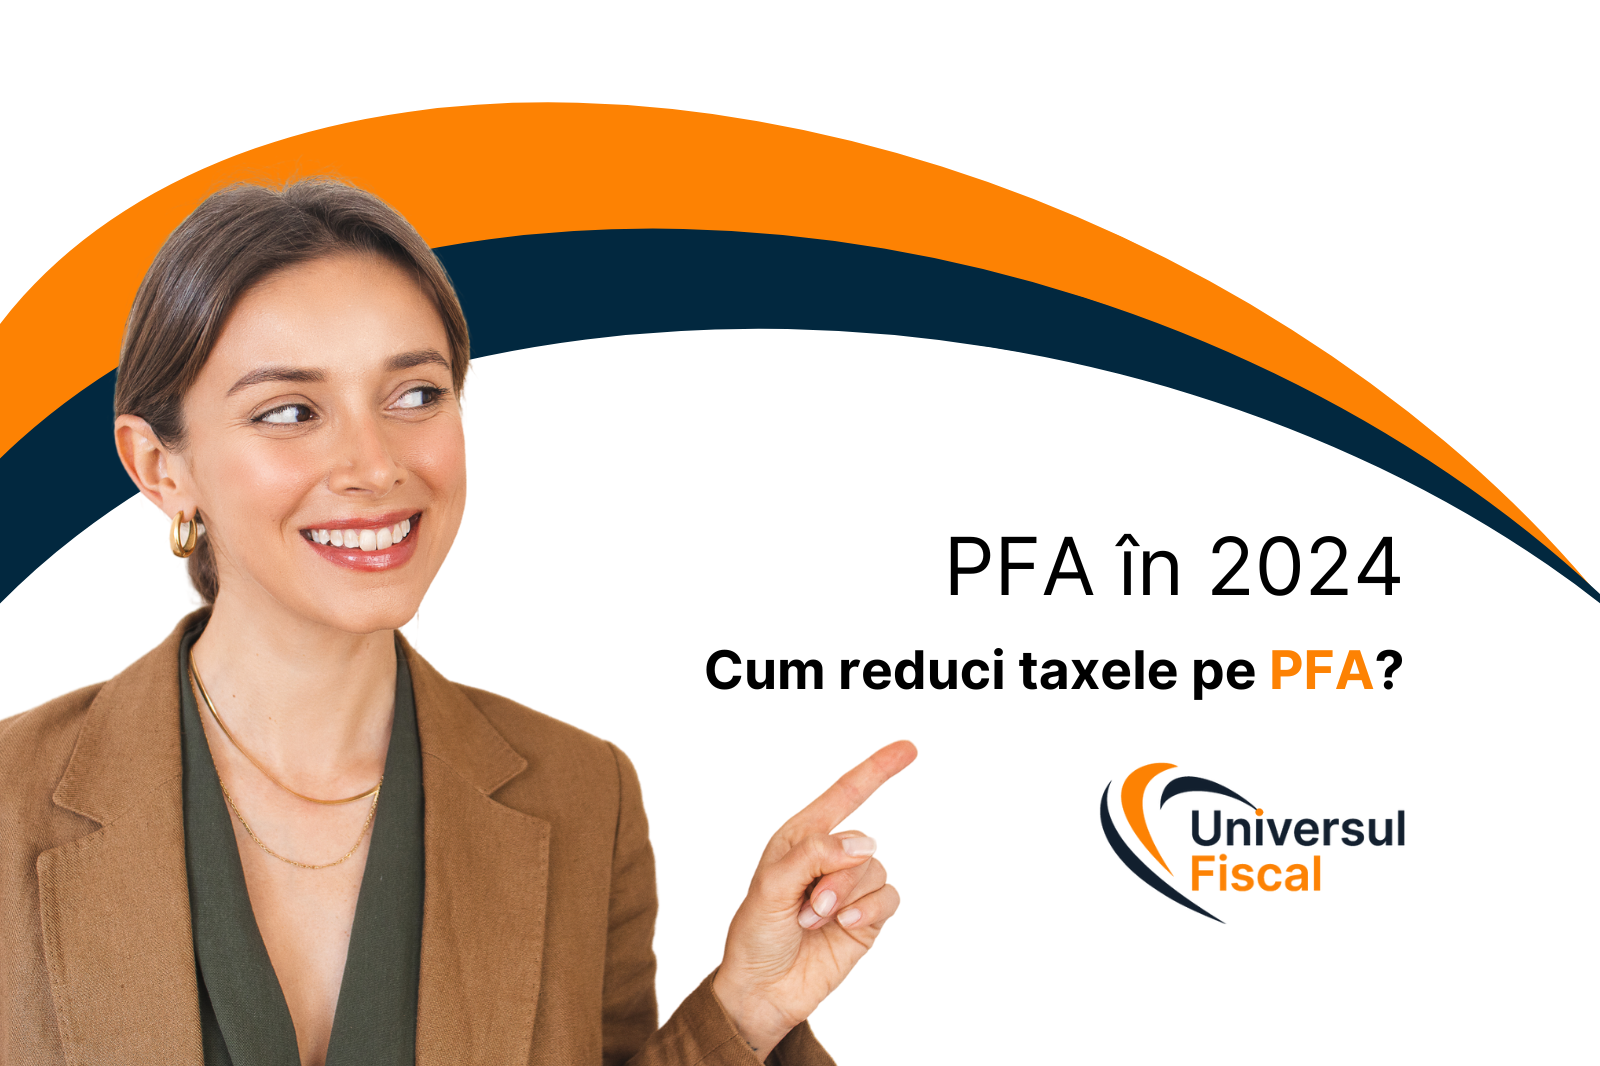 Cum reduci taxele pe PFA?